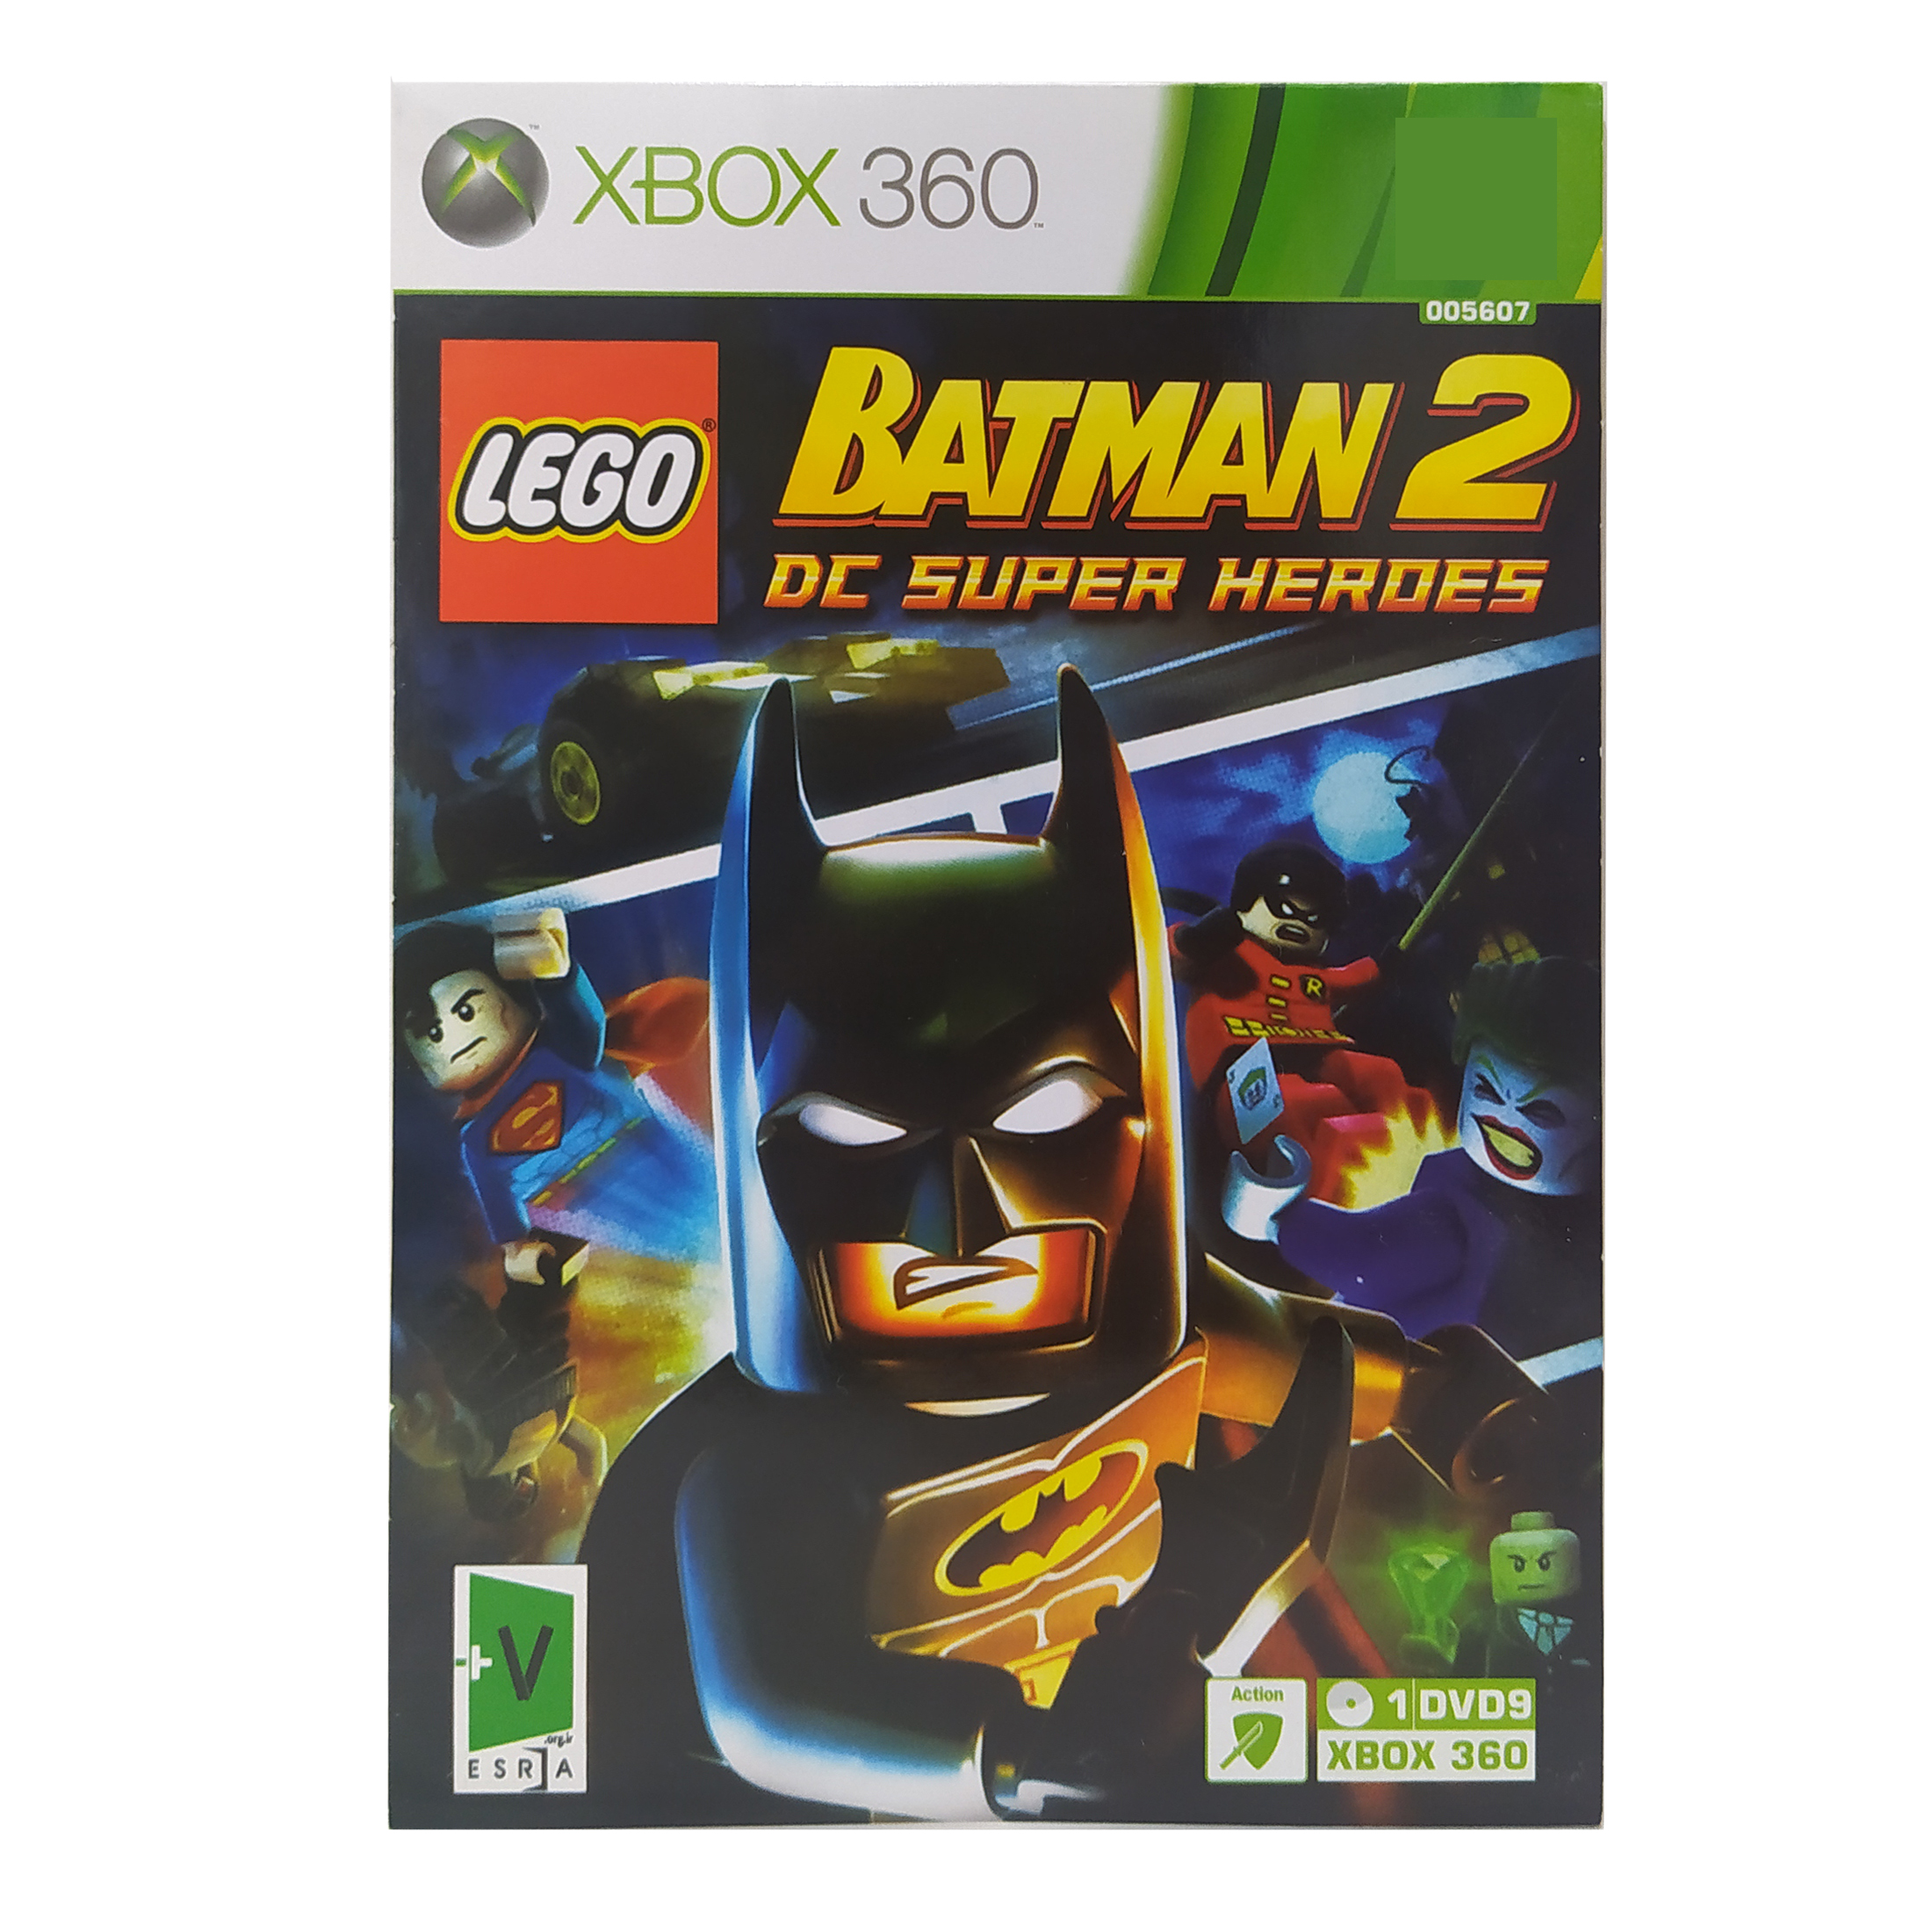 بازی LEGO BATMAN 2 DC SUPER HEROES مخصوص XBOX 360